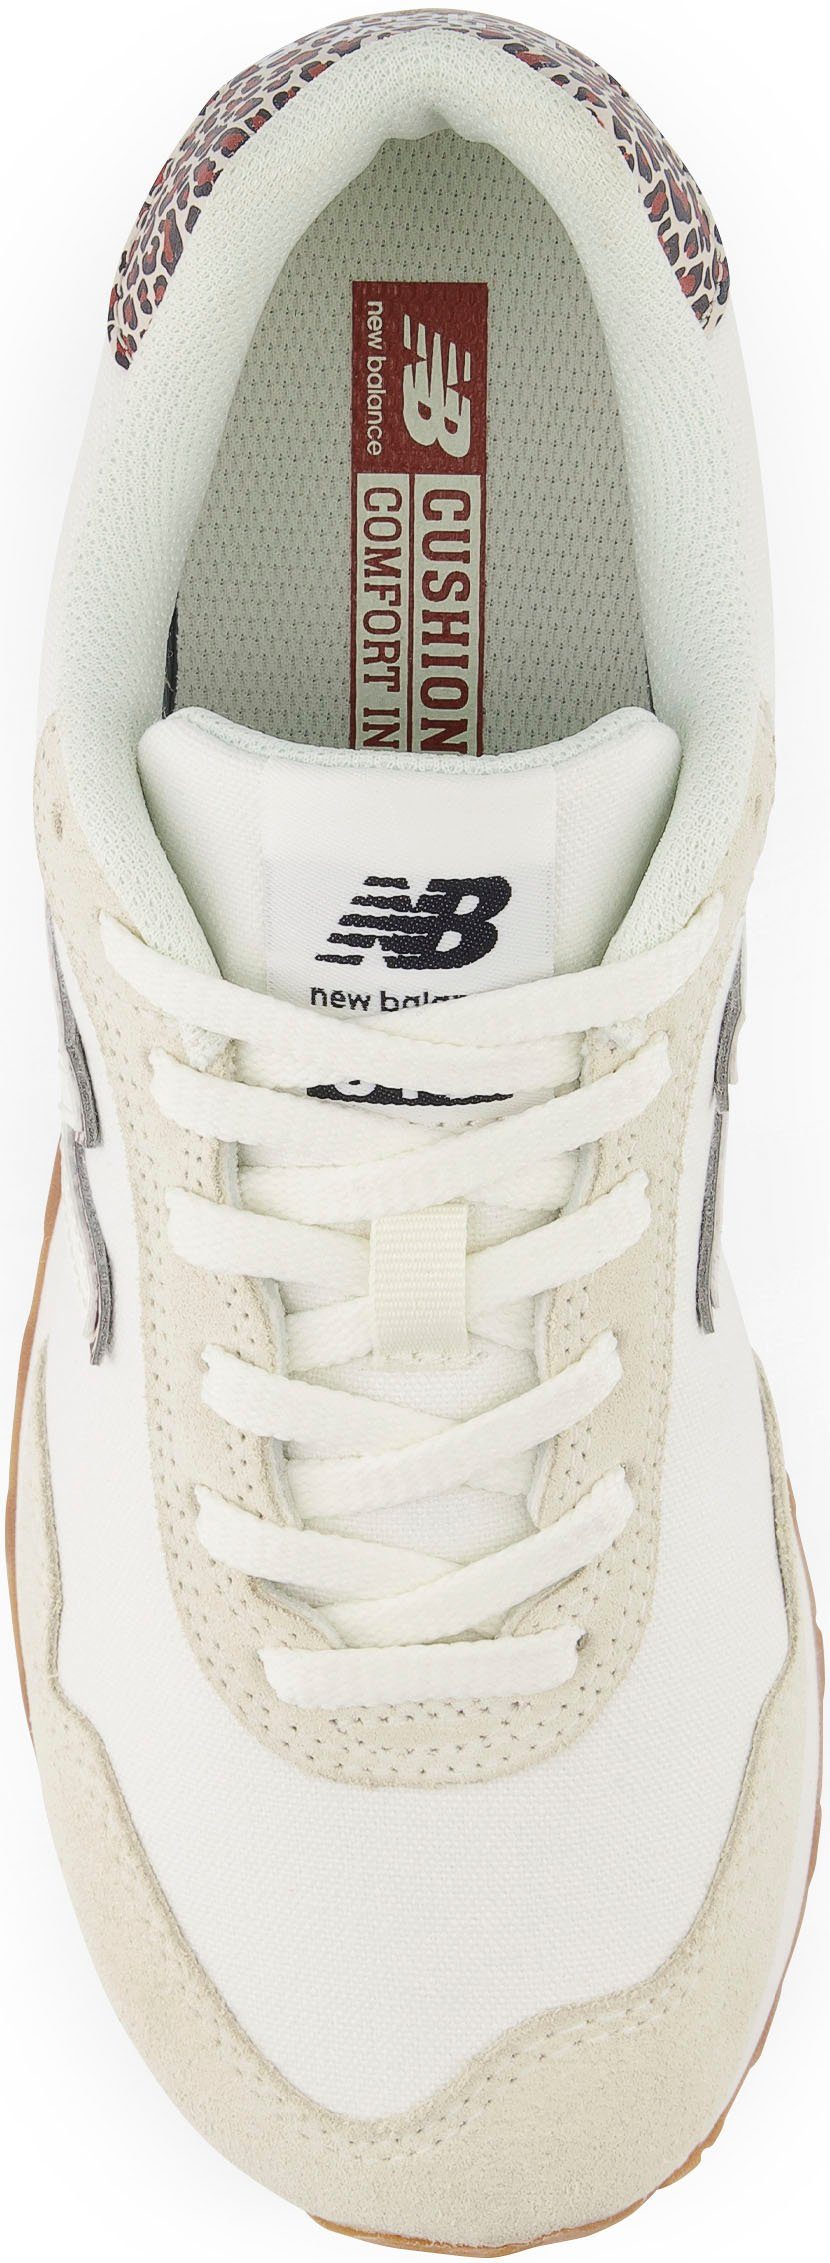 WL515 Sneaker New beige Balance